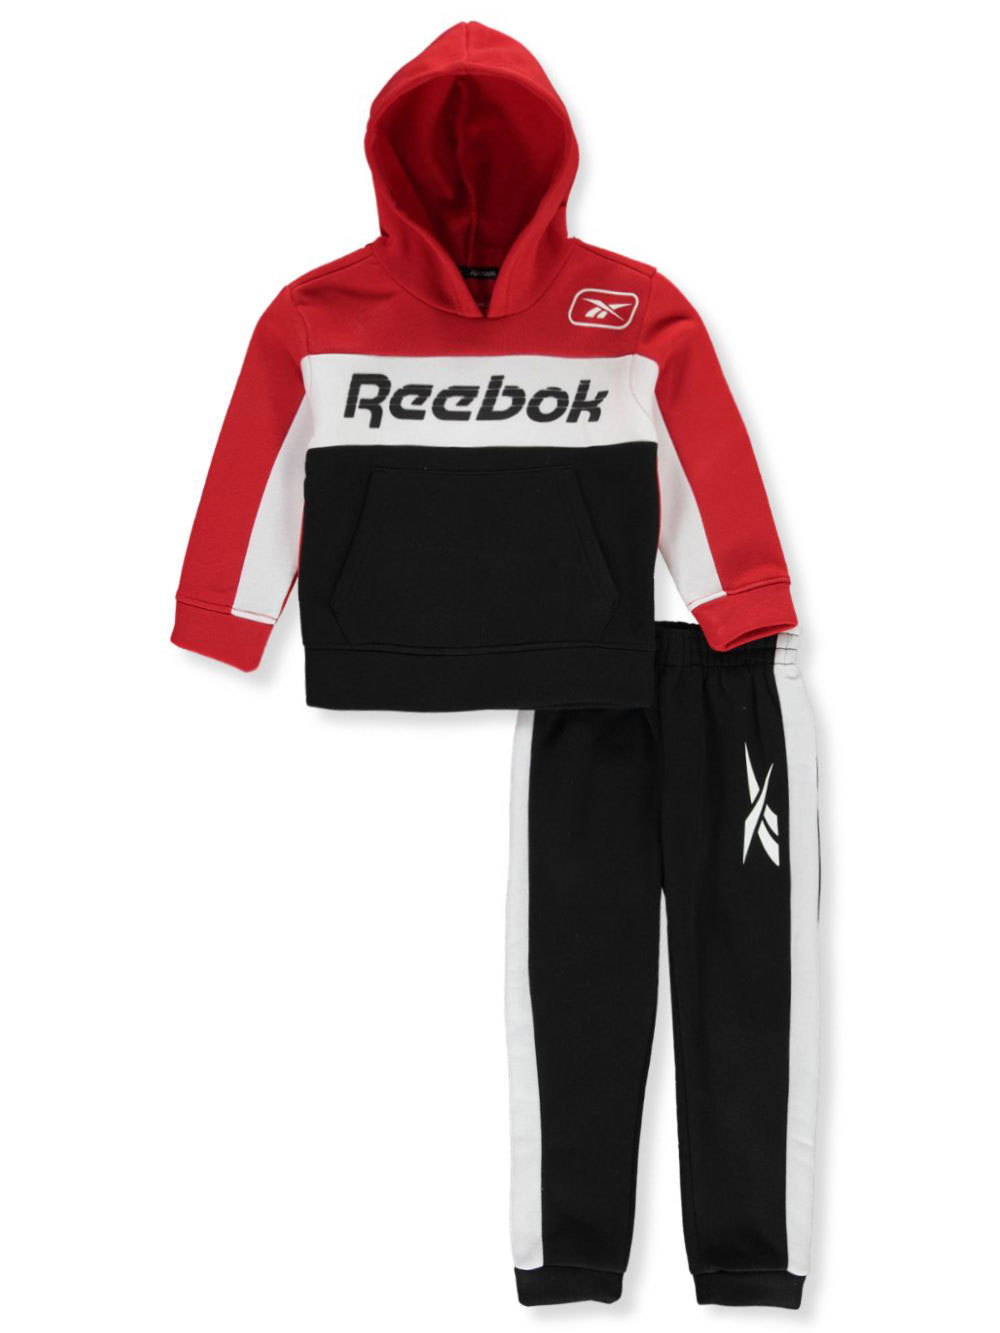 Reebok Boys' 2-Piece Sweatsuit Outfit | eBay